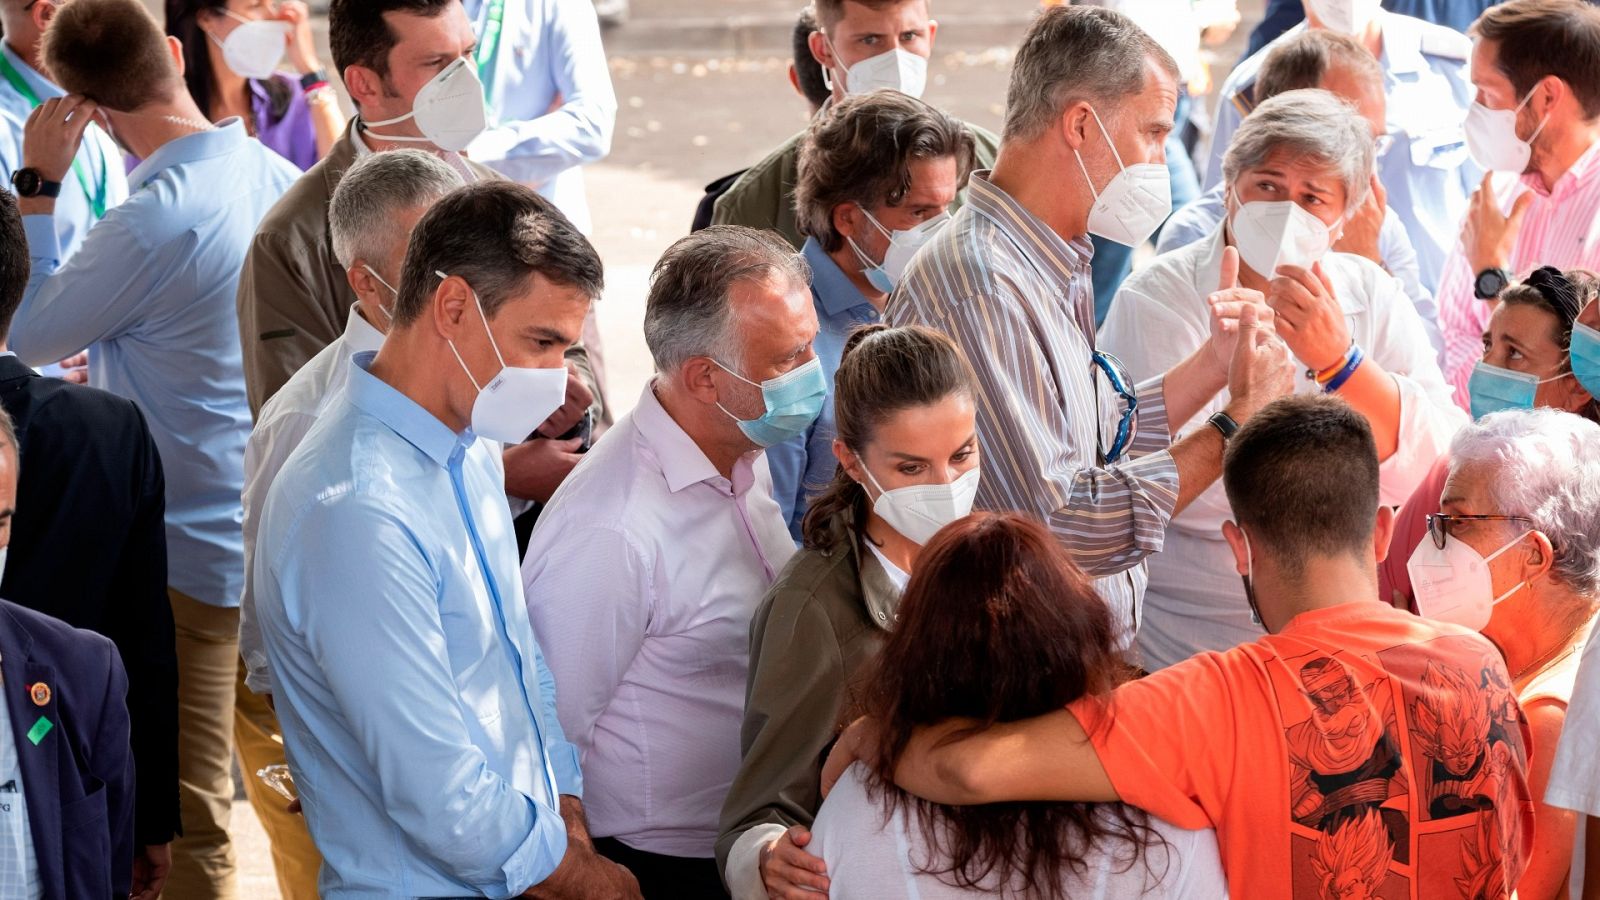 Los reyes visitan a los afectados de La Palma: "Entre todos vamos a ayudar a recomponer sus vidas"